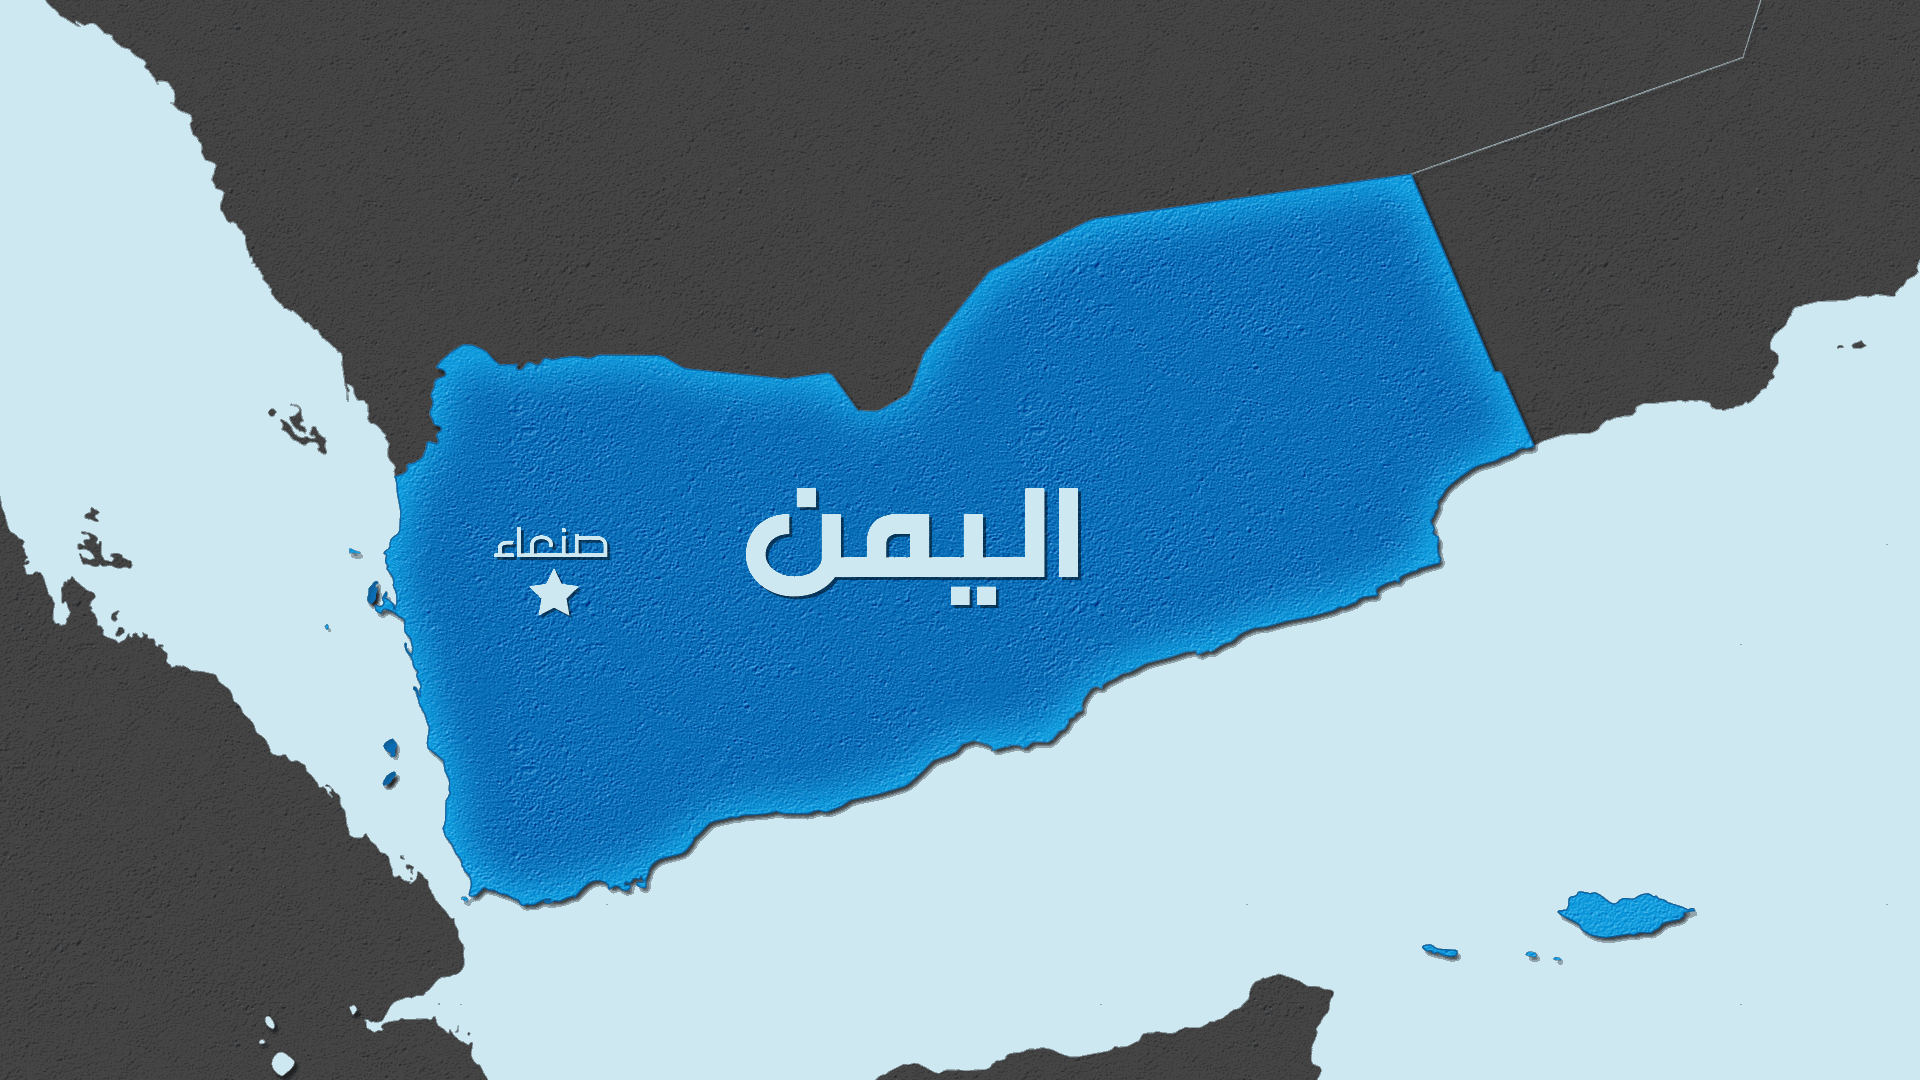 القيادة المركزية الأميركية: دمرنا 3 مسيرات في منطقة يسيطر عليها الحوثيون باليمن